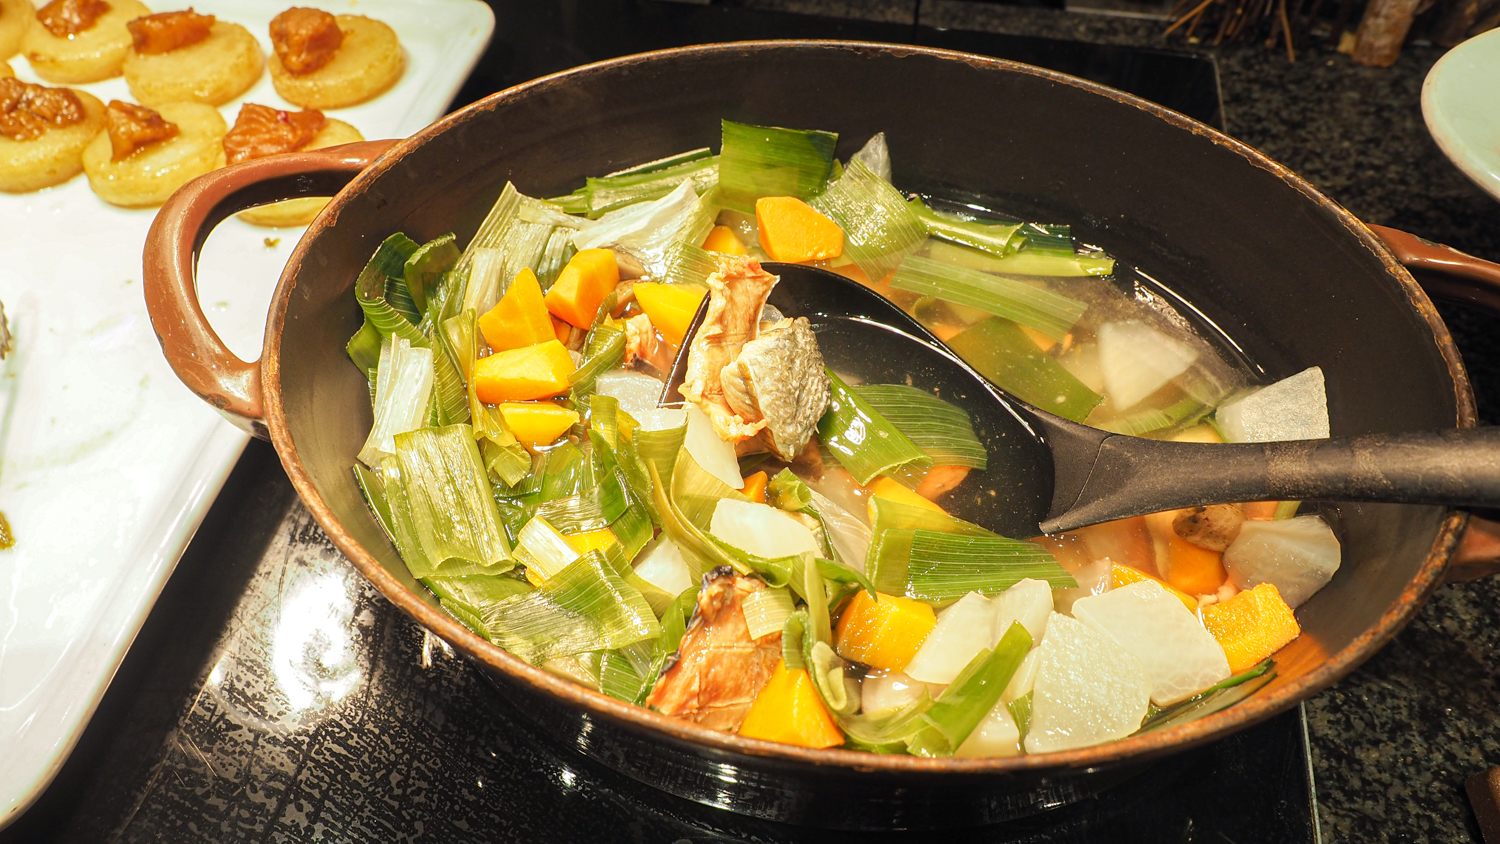 アイヌ伝統料理"オハウ"｜Soup from the traditional Ainu cuisine ”Ohau" with salmon and vegetables